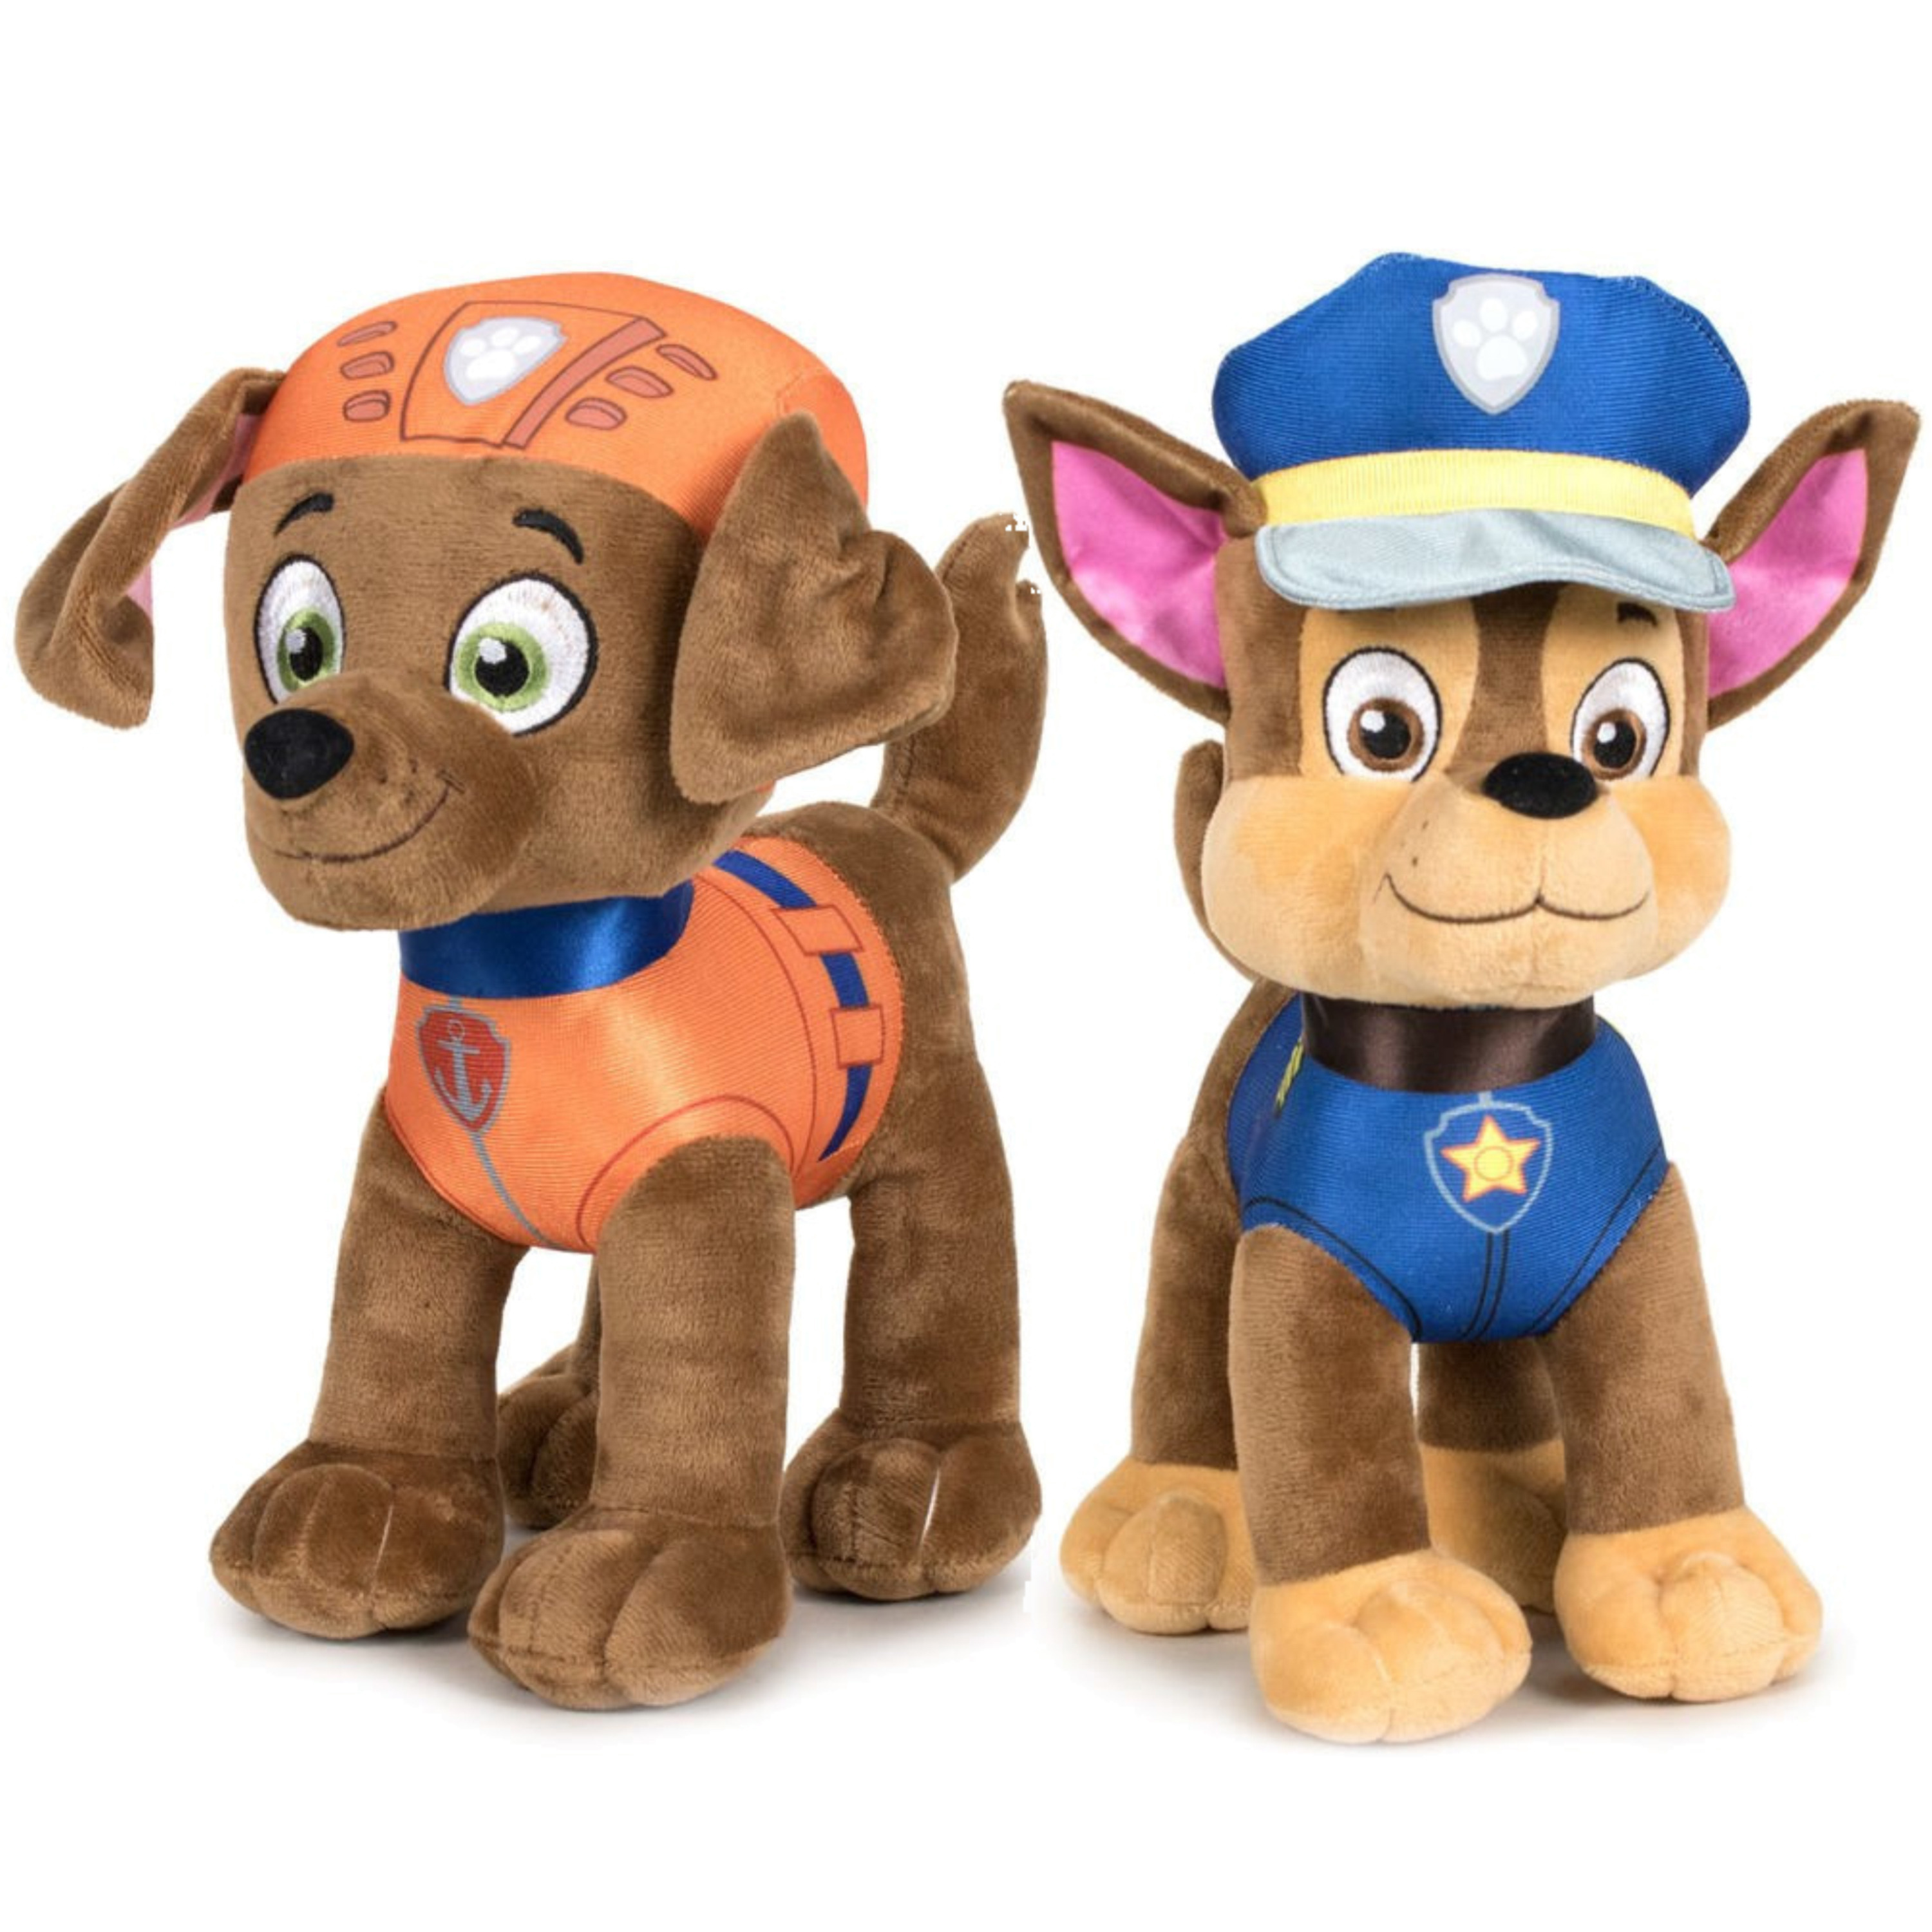 Paw Patrol figuren speelgoed knuffels set van 2x karakters Zuma en Chase 19 cm